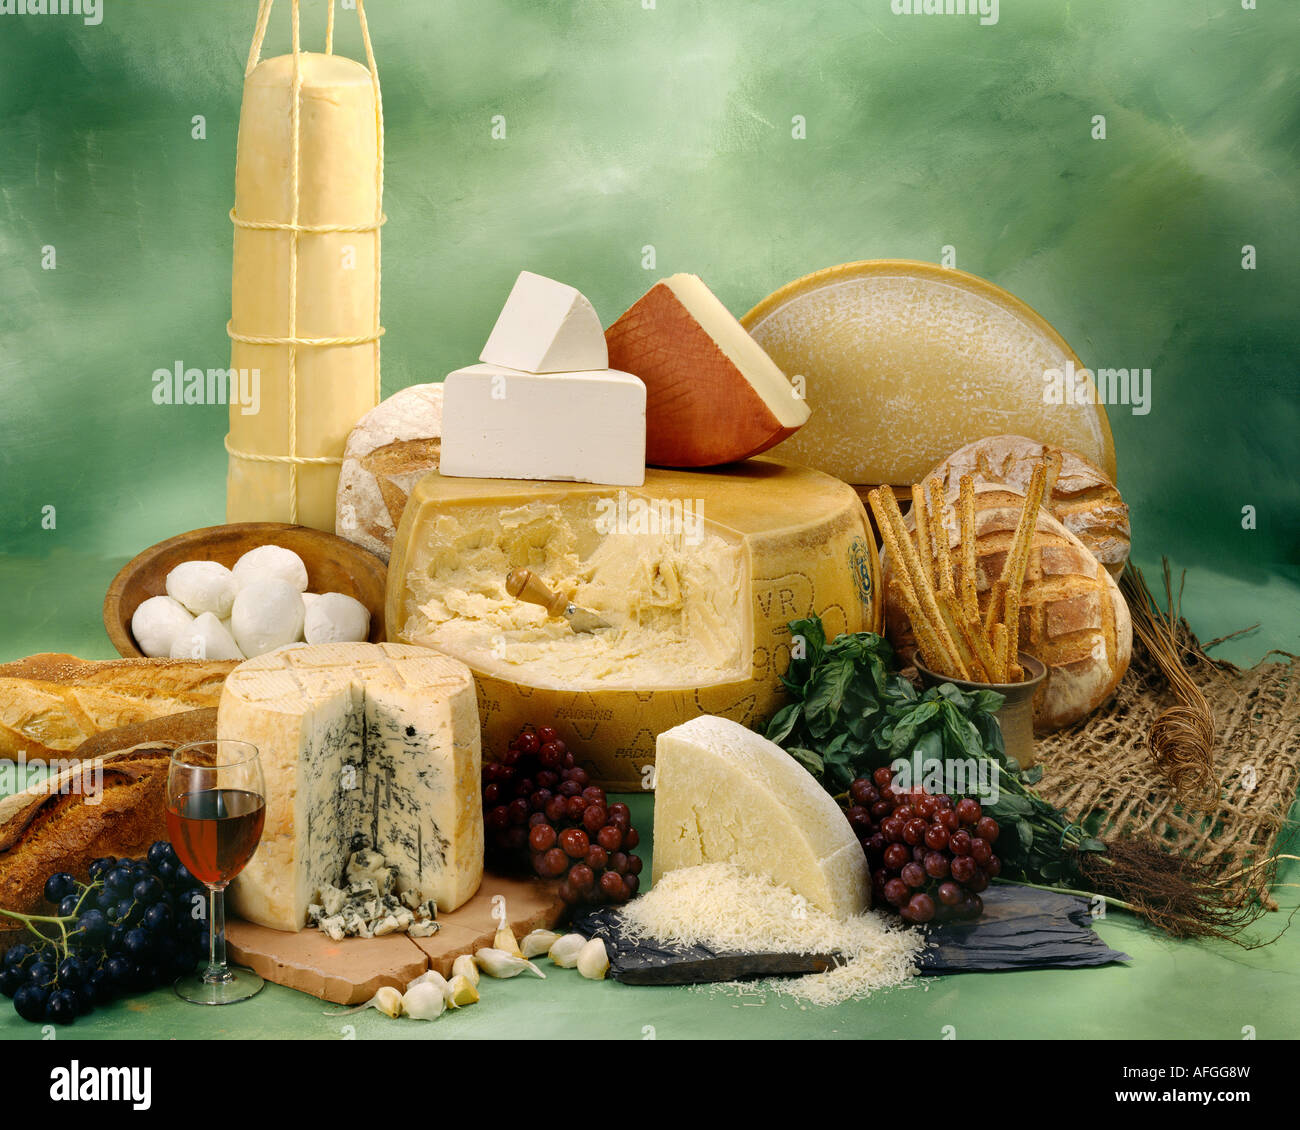 Italienische Käsesorten in Gruppe Farbfoto auf grün getönten gesprenkelte Hintergrund. Querformat, Studio Tischplatte. Klassisches Bild. Stockfoto